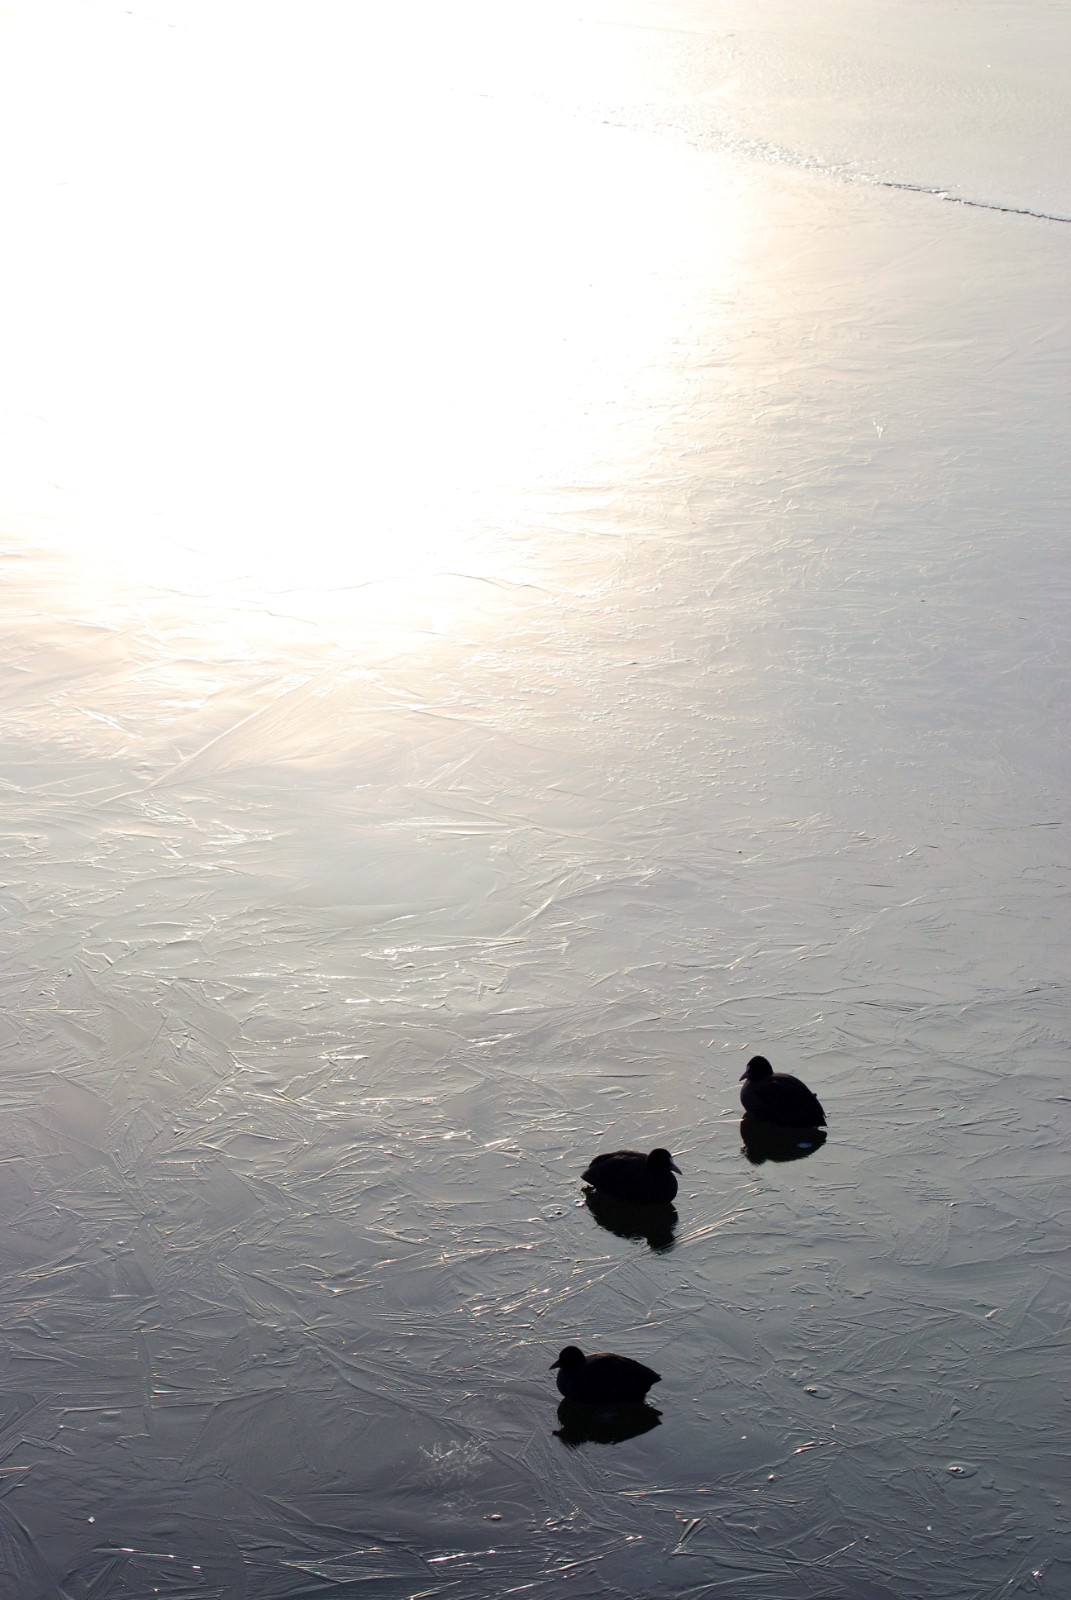 连日来，受强冷空气影响，滨海新区河流水面封冻。12月18日，记者在滨海新区北部片区蓟运河沿线看到河面结冰，白色的流凌已覆盖了成片河面。寒风中，数只野鸭子在冰面上停留、嬉戏，形成一道生机勃勃的冬日美景。（记者 戈荣喜 摄影报道）